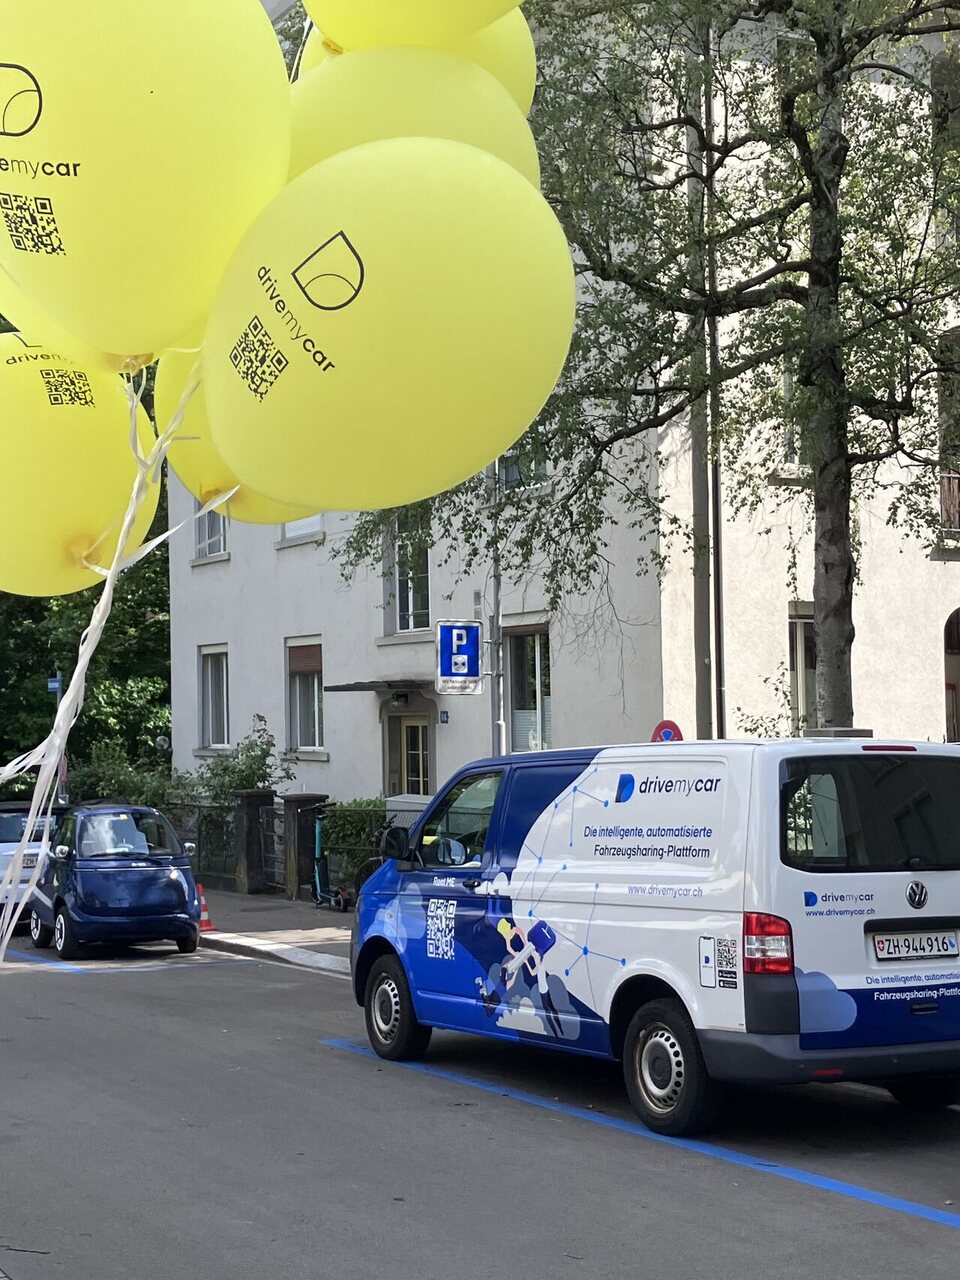 Drivemycar: il vernissage ufficiale a Zurigo